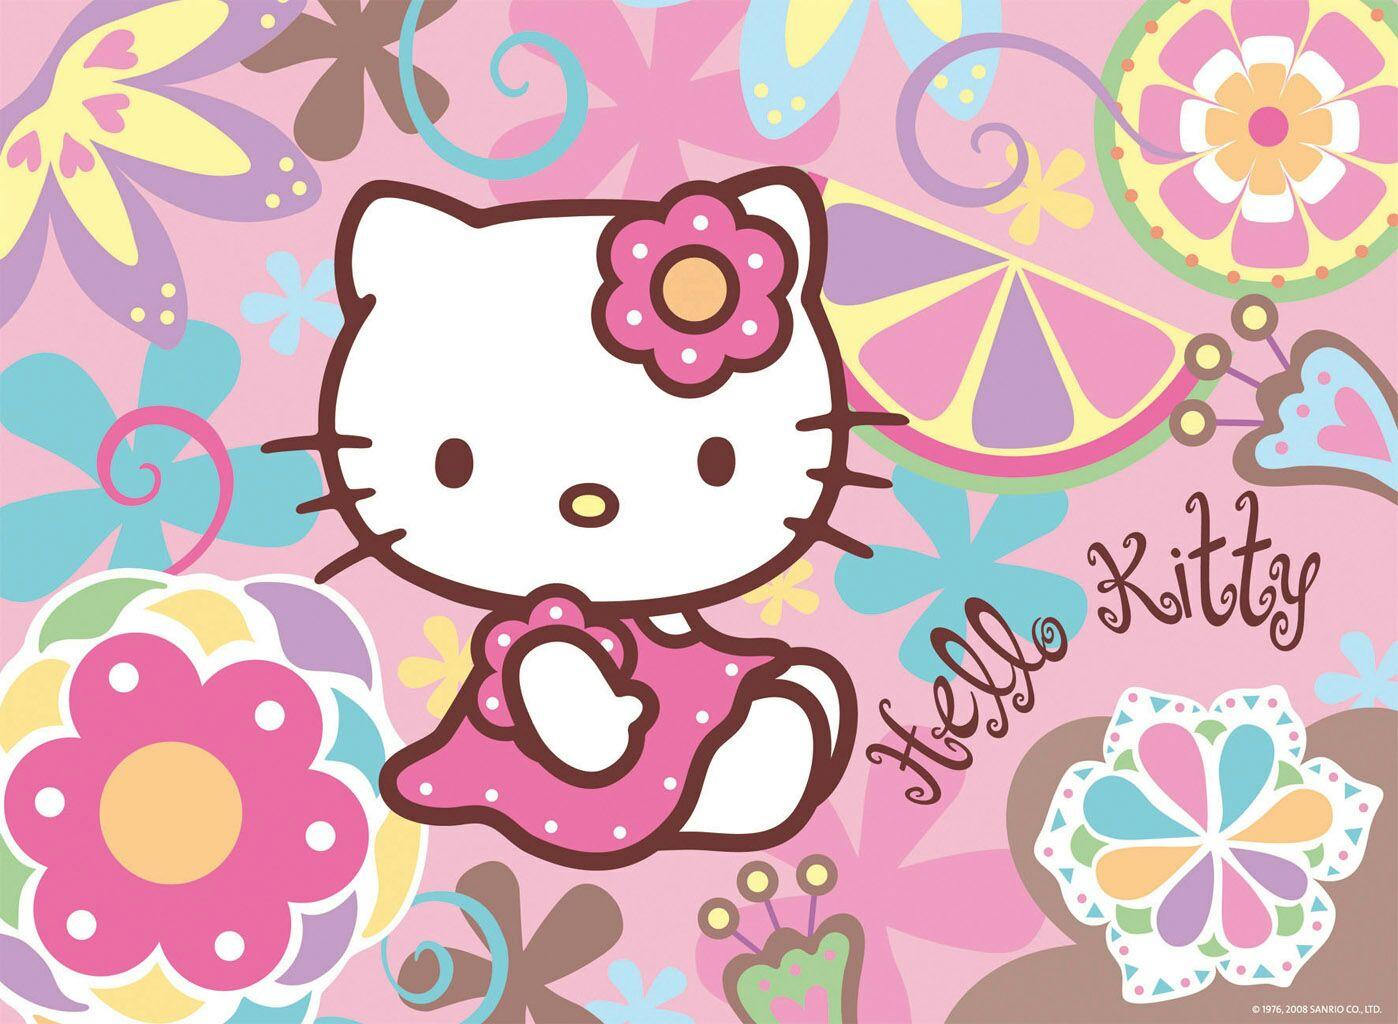 壁纸 HelloKitty Kitty猫 - 堆糖，美图壁纸兴趣社区